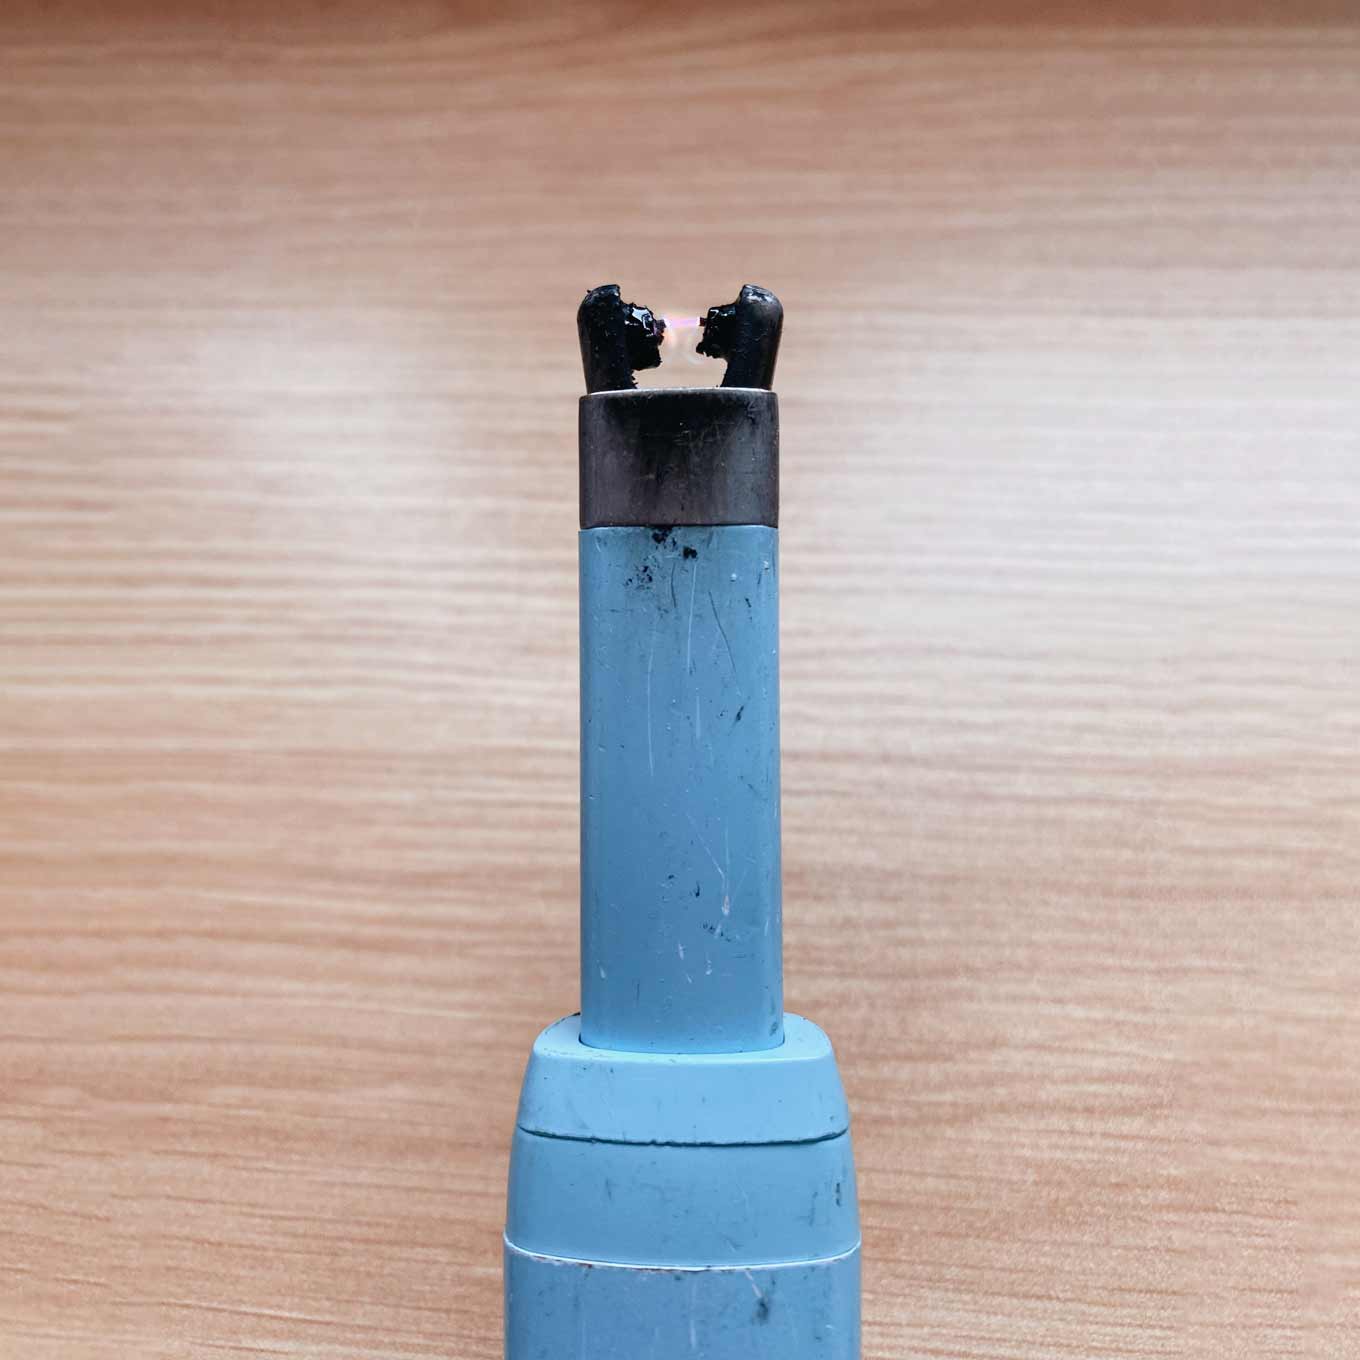 Close-upfoto van elektrische aansteker van The USB Lighter Company, met slijtage, krassen en vuil, maar toch verlichting